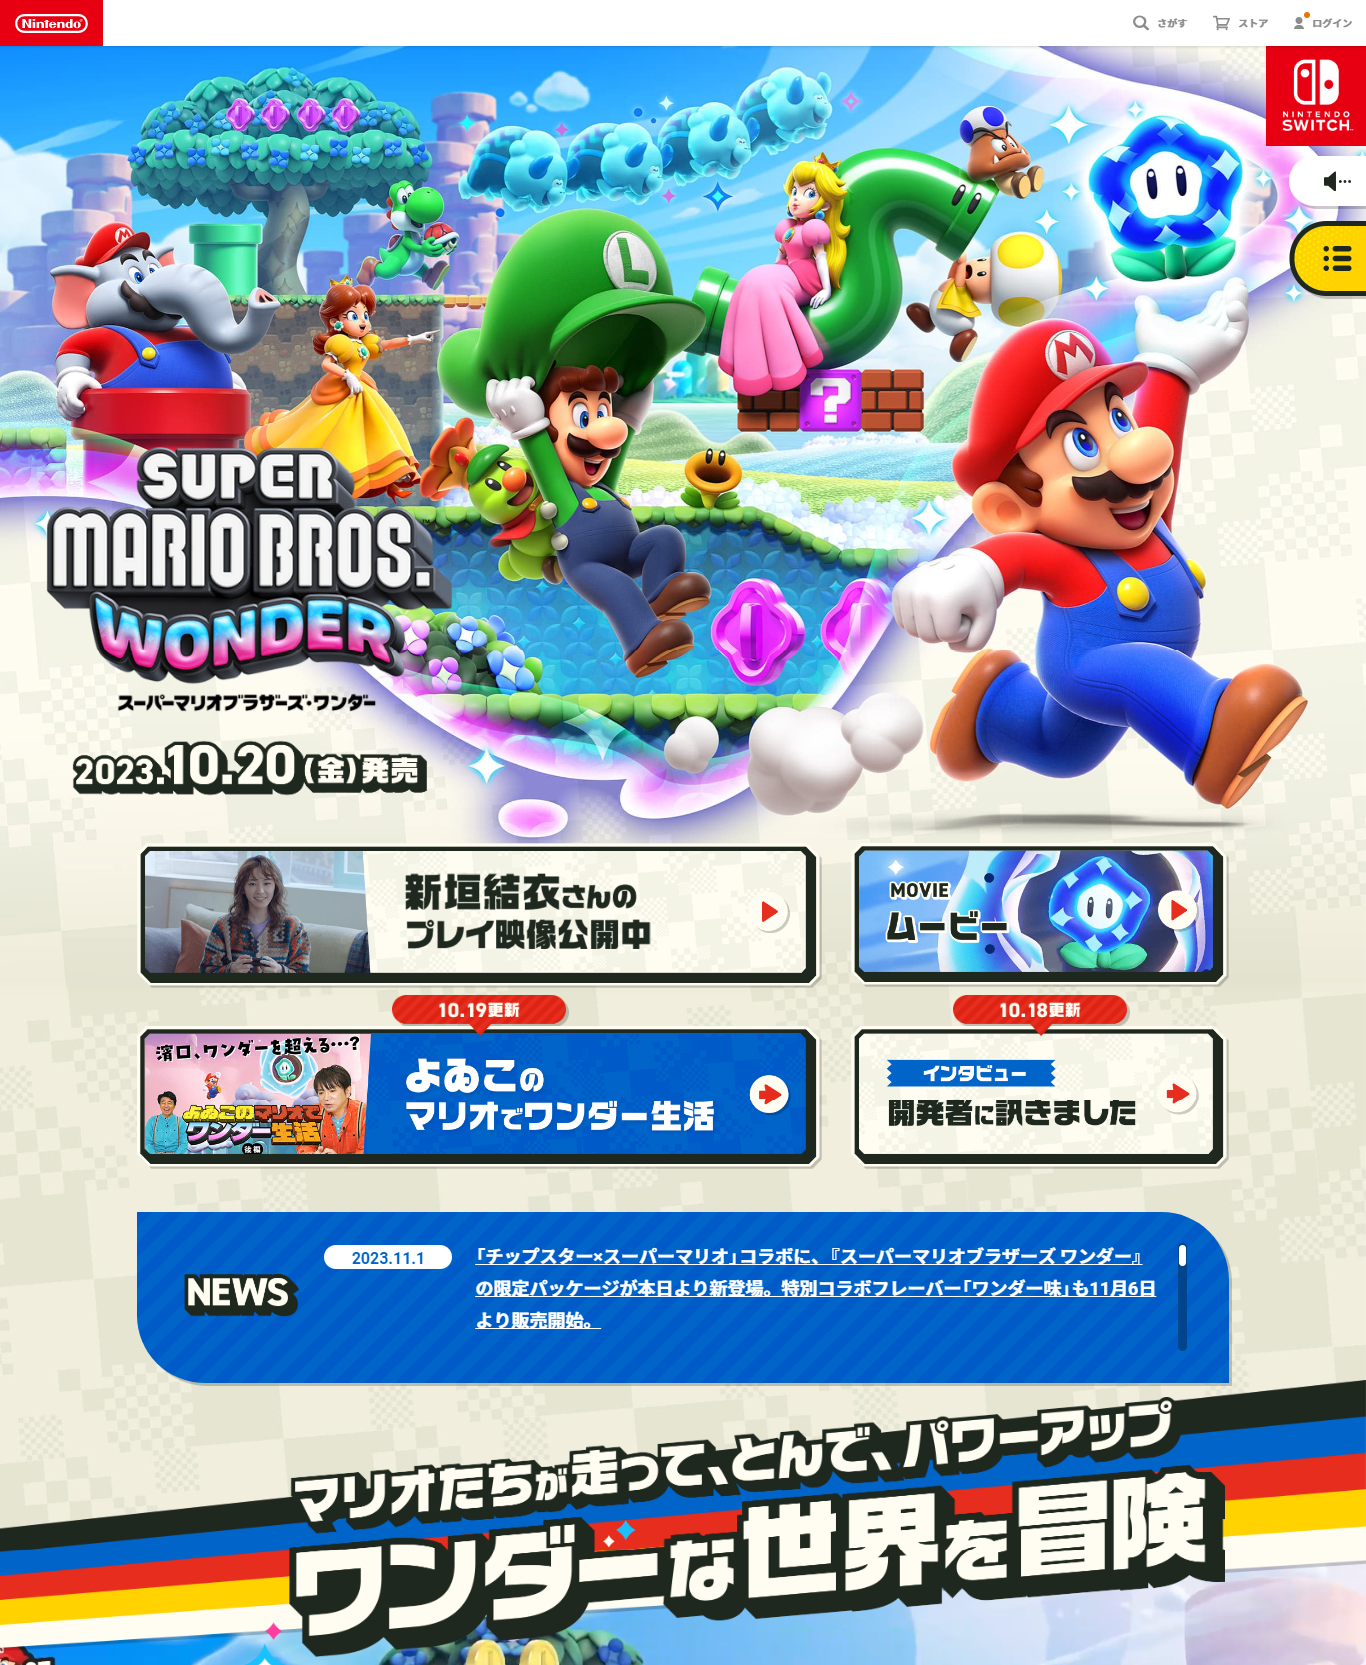 スーパーマリオブラザーズ ワンダー | Nintendo Switch | 任天堂 